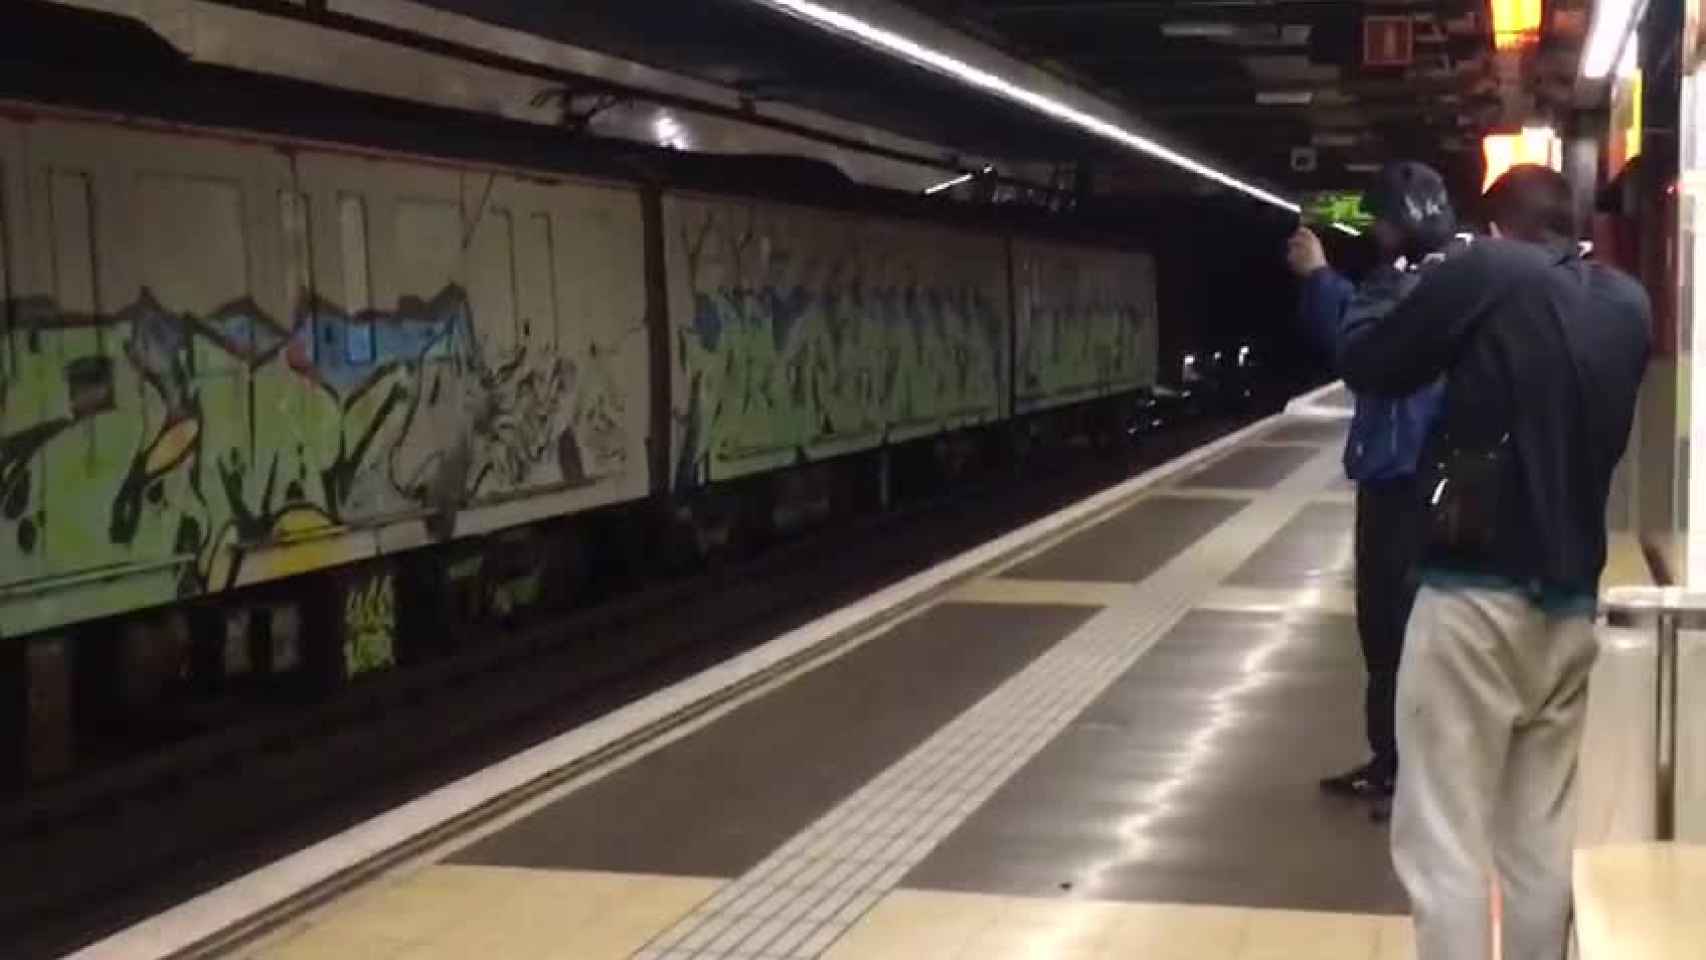 Dos de los grafiteros graban el convoy con sus pintadas, con el metro parado, en la estación de Selva de Mar / MÒNICA TUDELA EL PERIÓDICO DE CATALUNYA